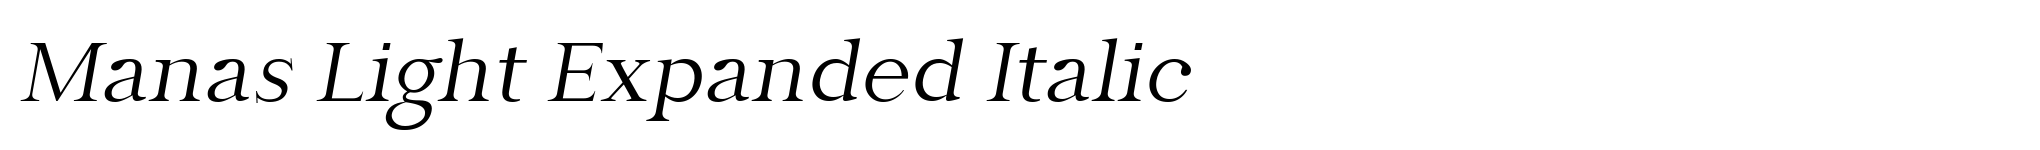 Manas Light Expanded Italic image